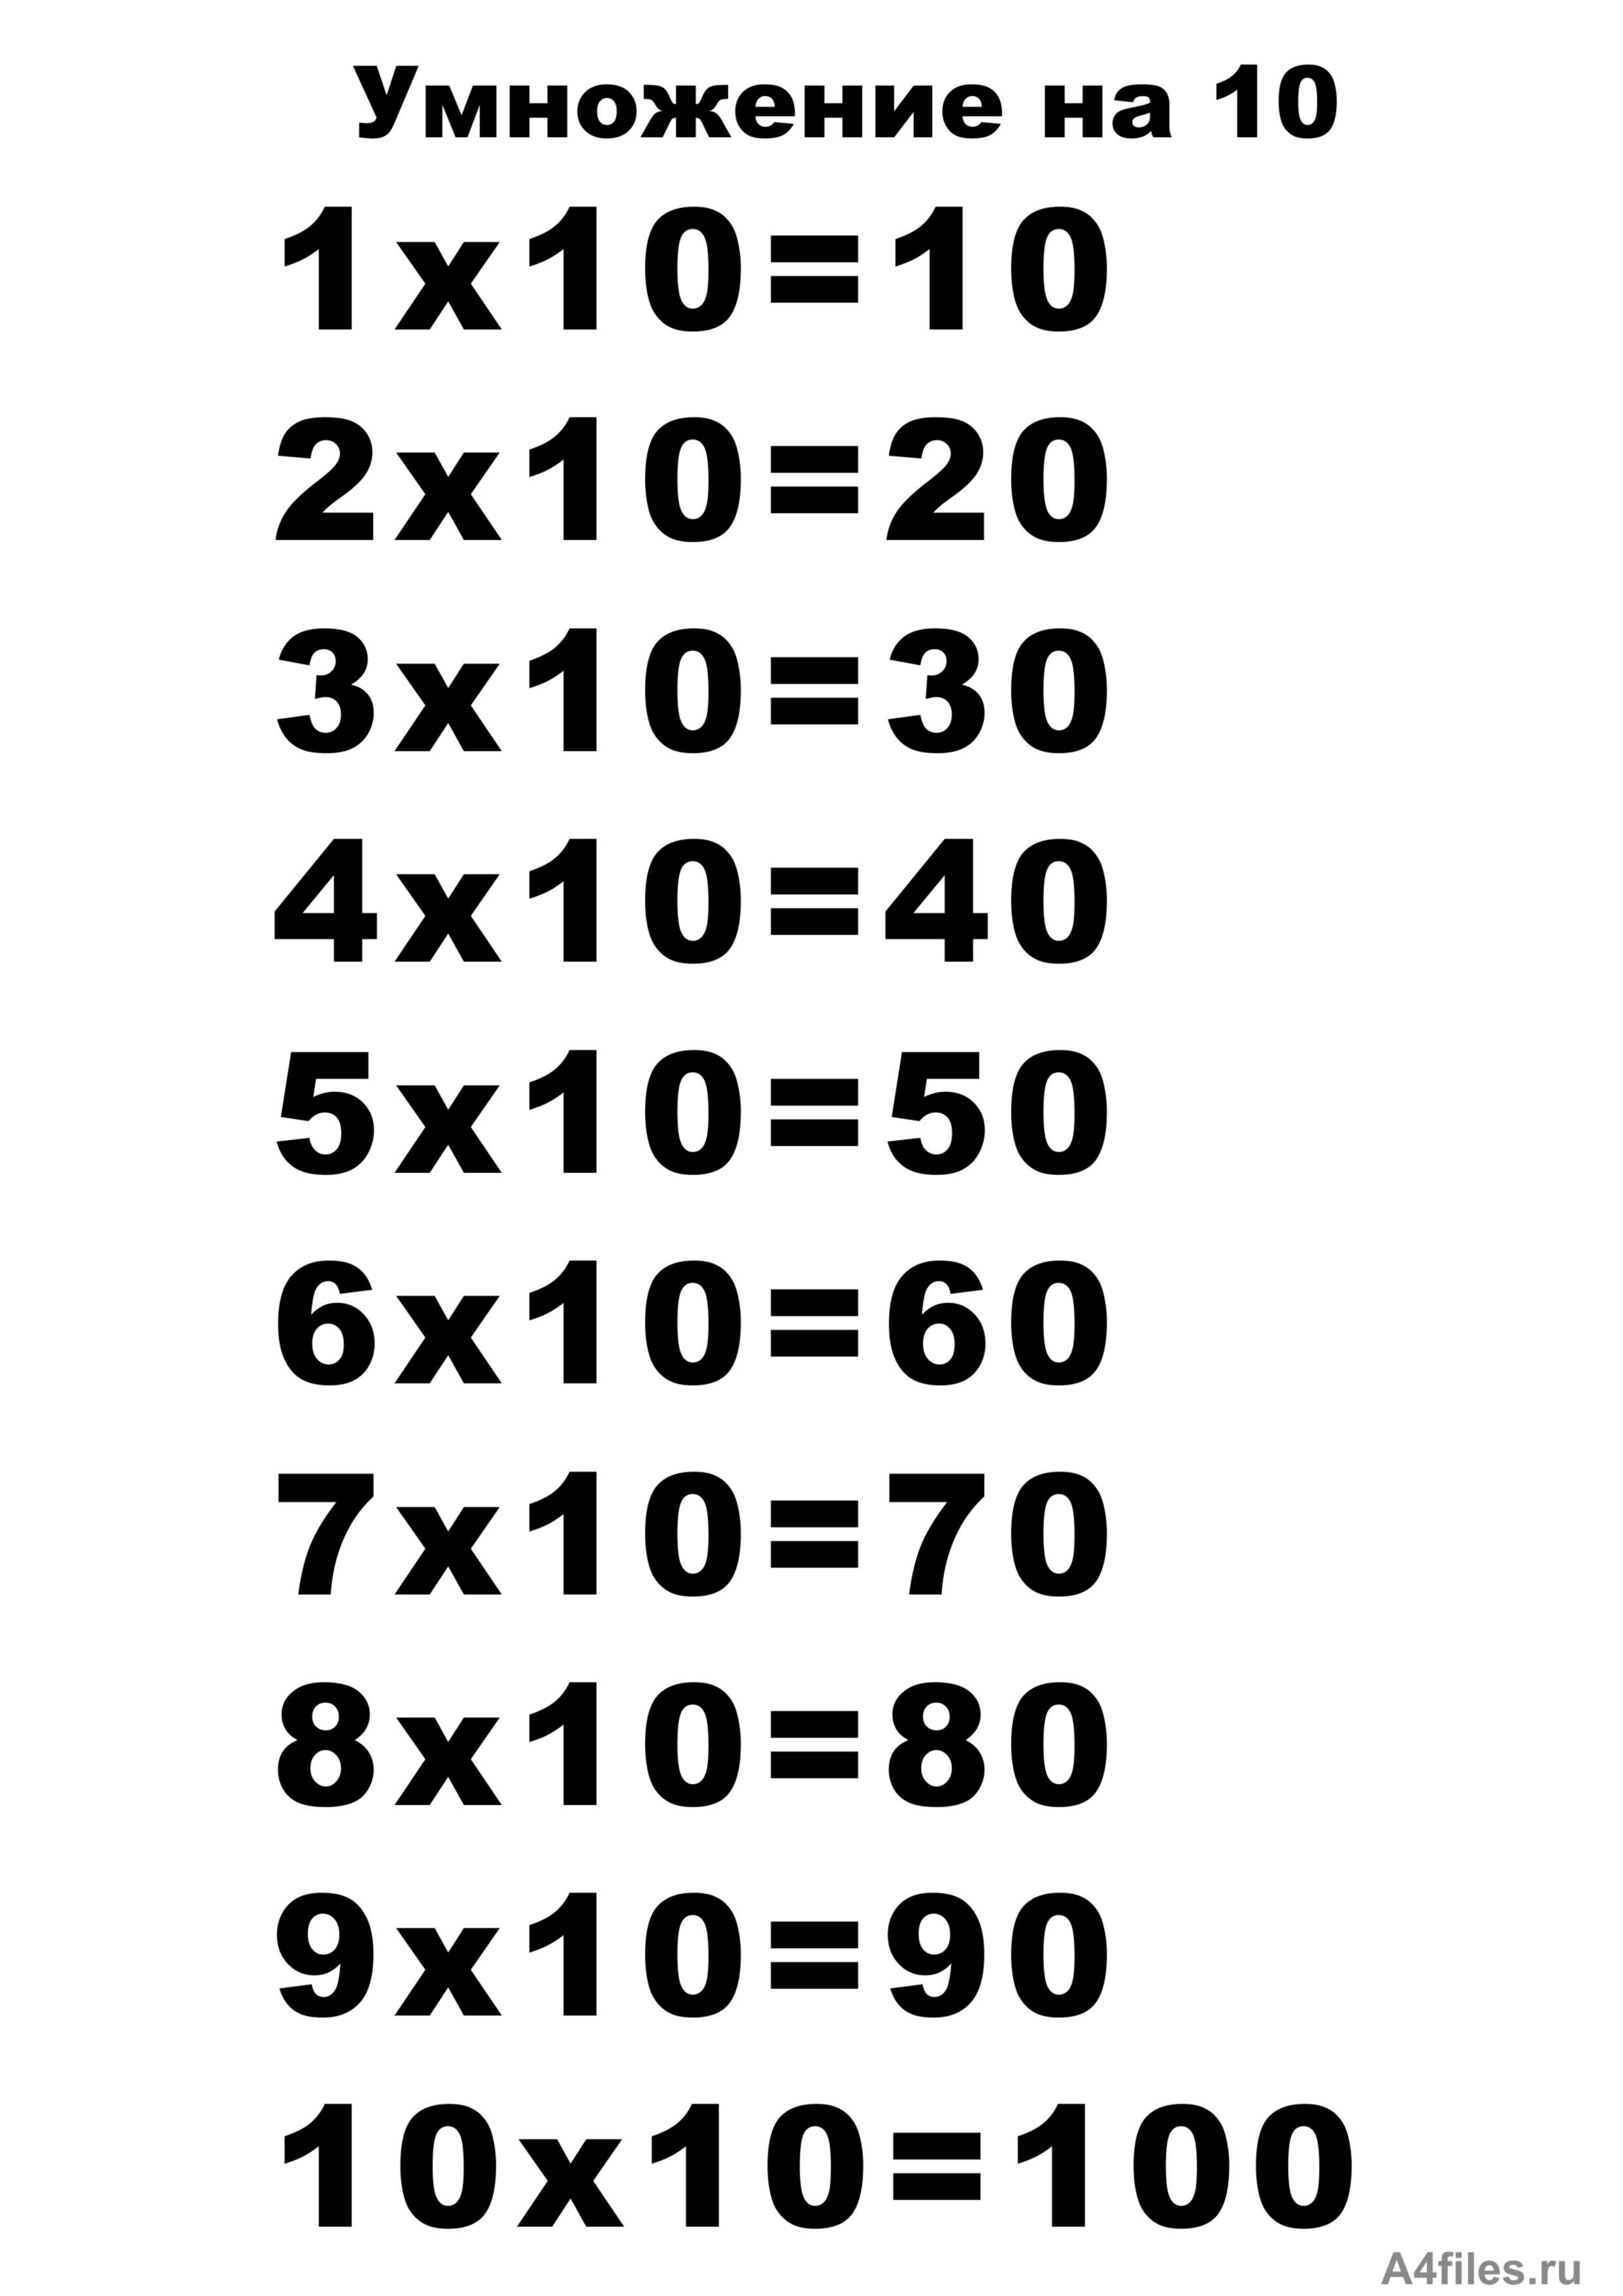 120 умножить на 10. Таблицв умнажения на "10. Таблица умножения на 10 распечатать а4 Формат. Таблица на 10. Т͇а͇б͇л͇и͇ц͇а͇ У͇М͇Н͇О͇Ж͇Е͇Н͇И͇Й͇.